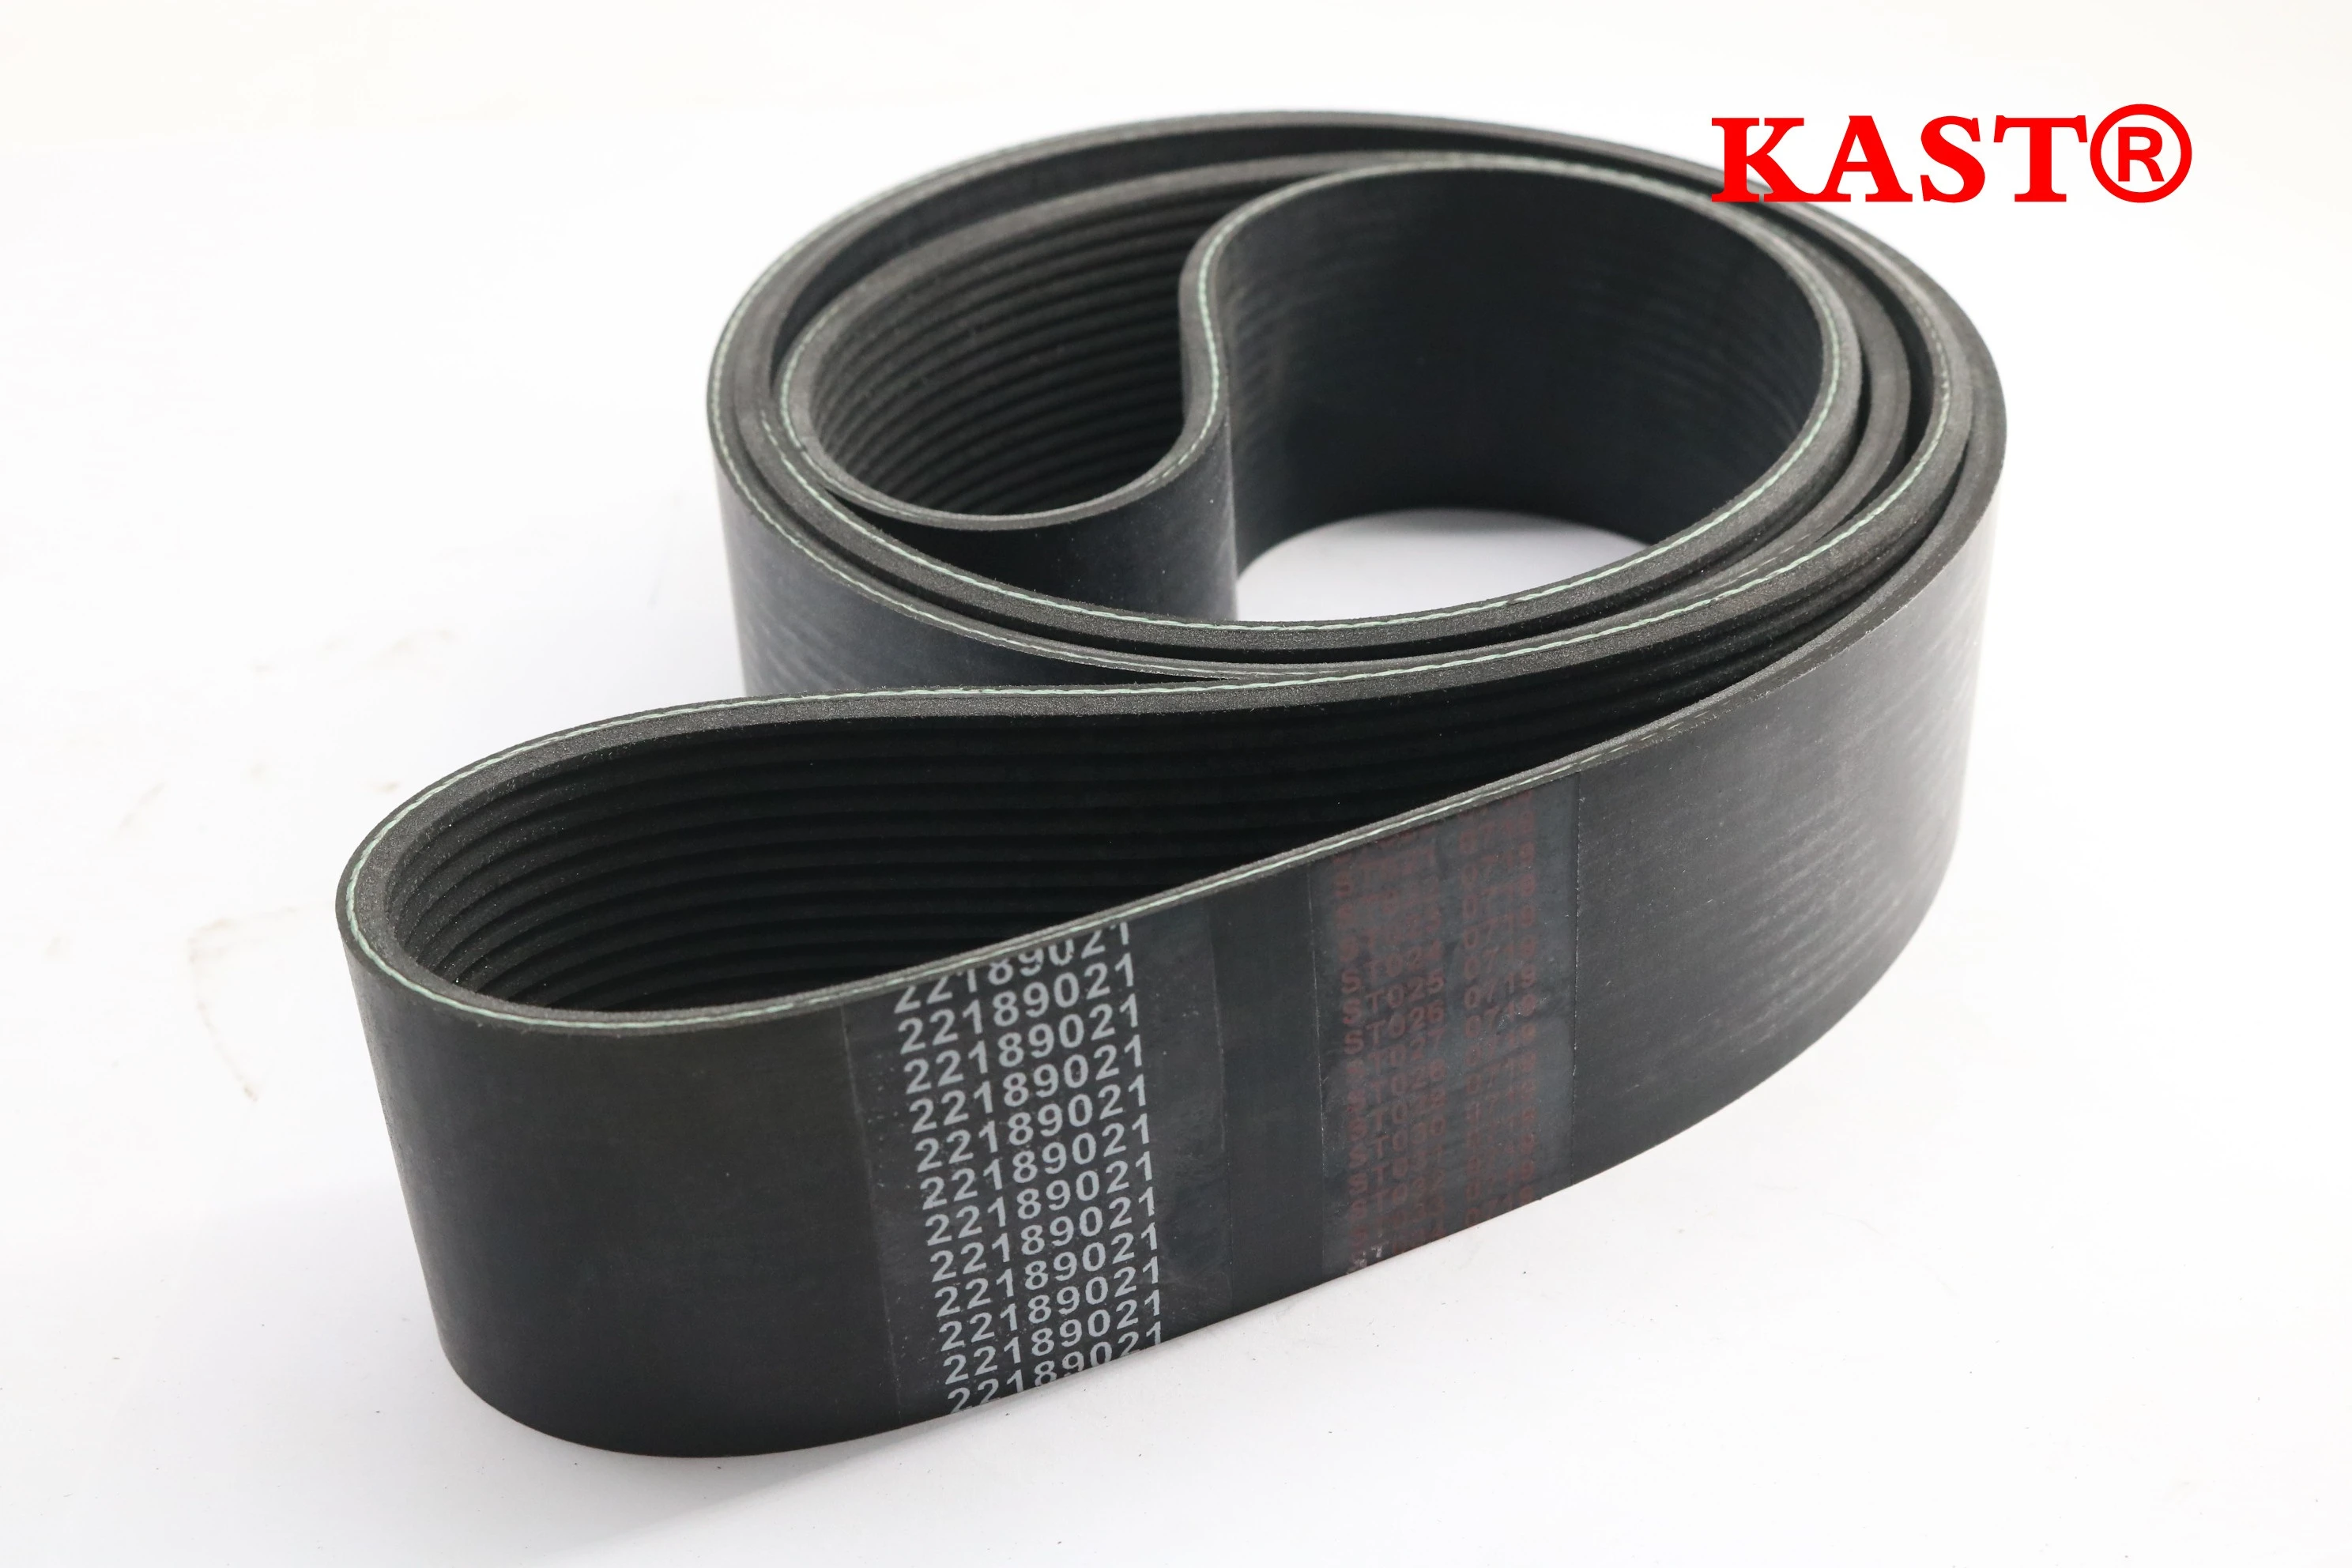 Air compressor spare parts leather belt transmission belt v-belt 22189021 for sale